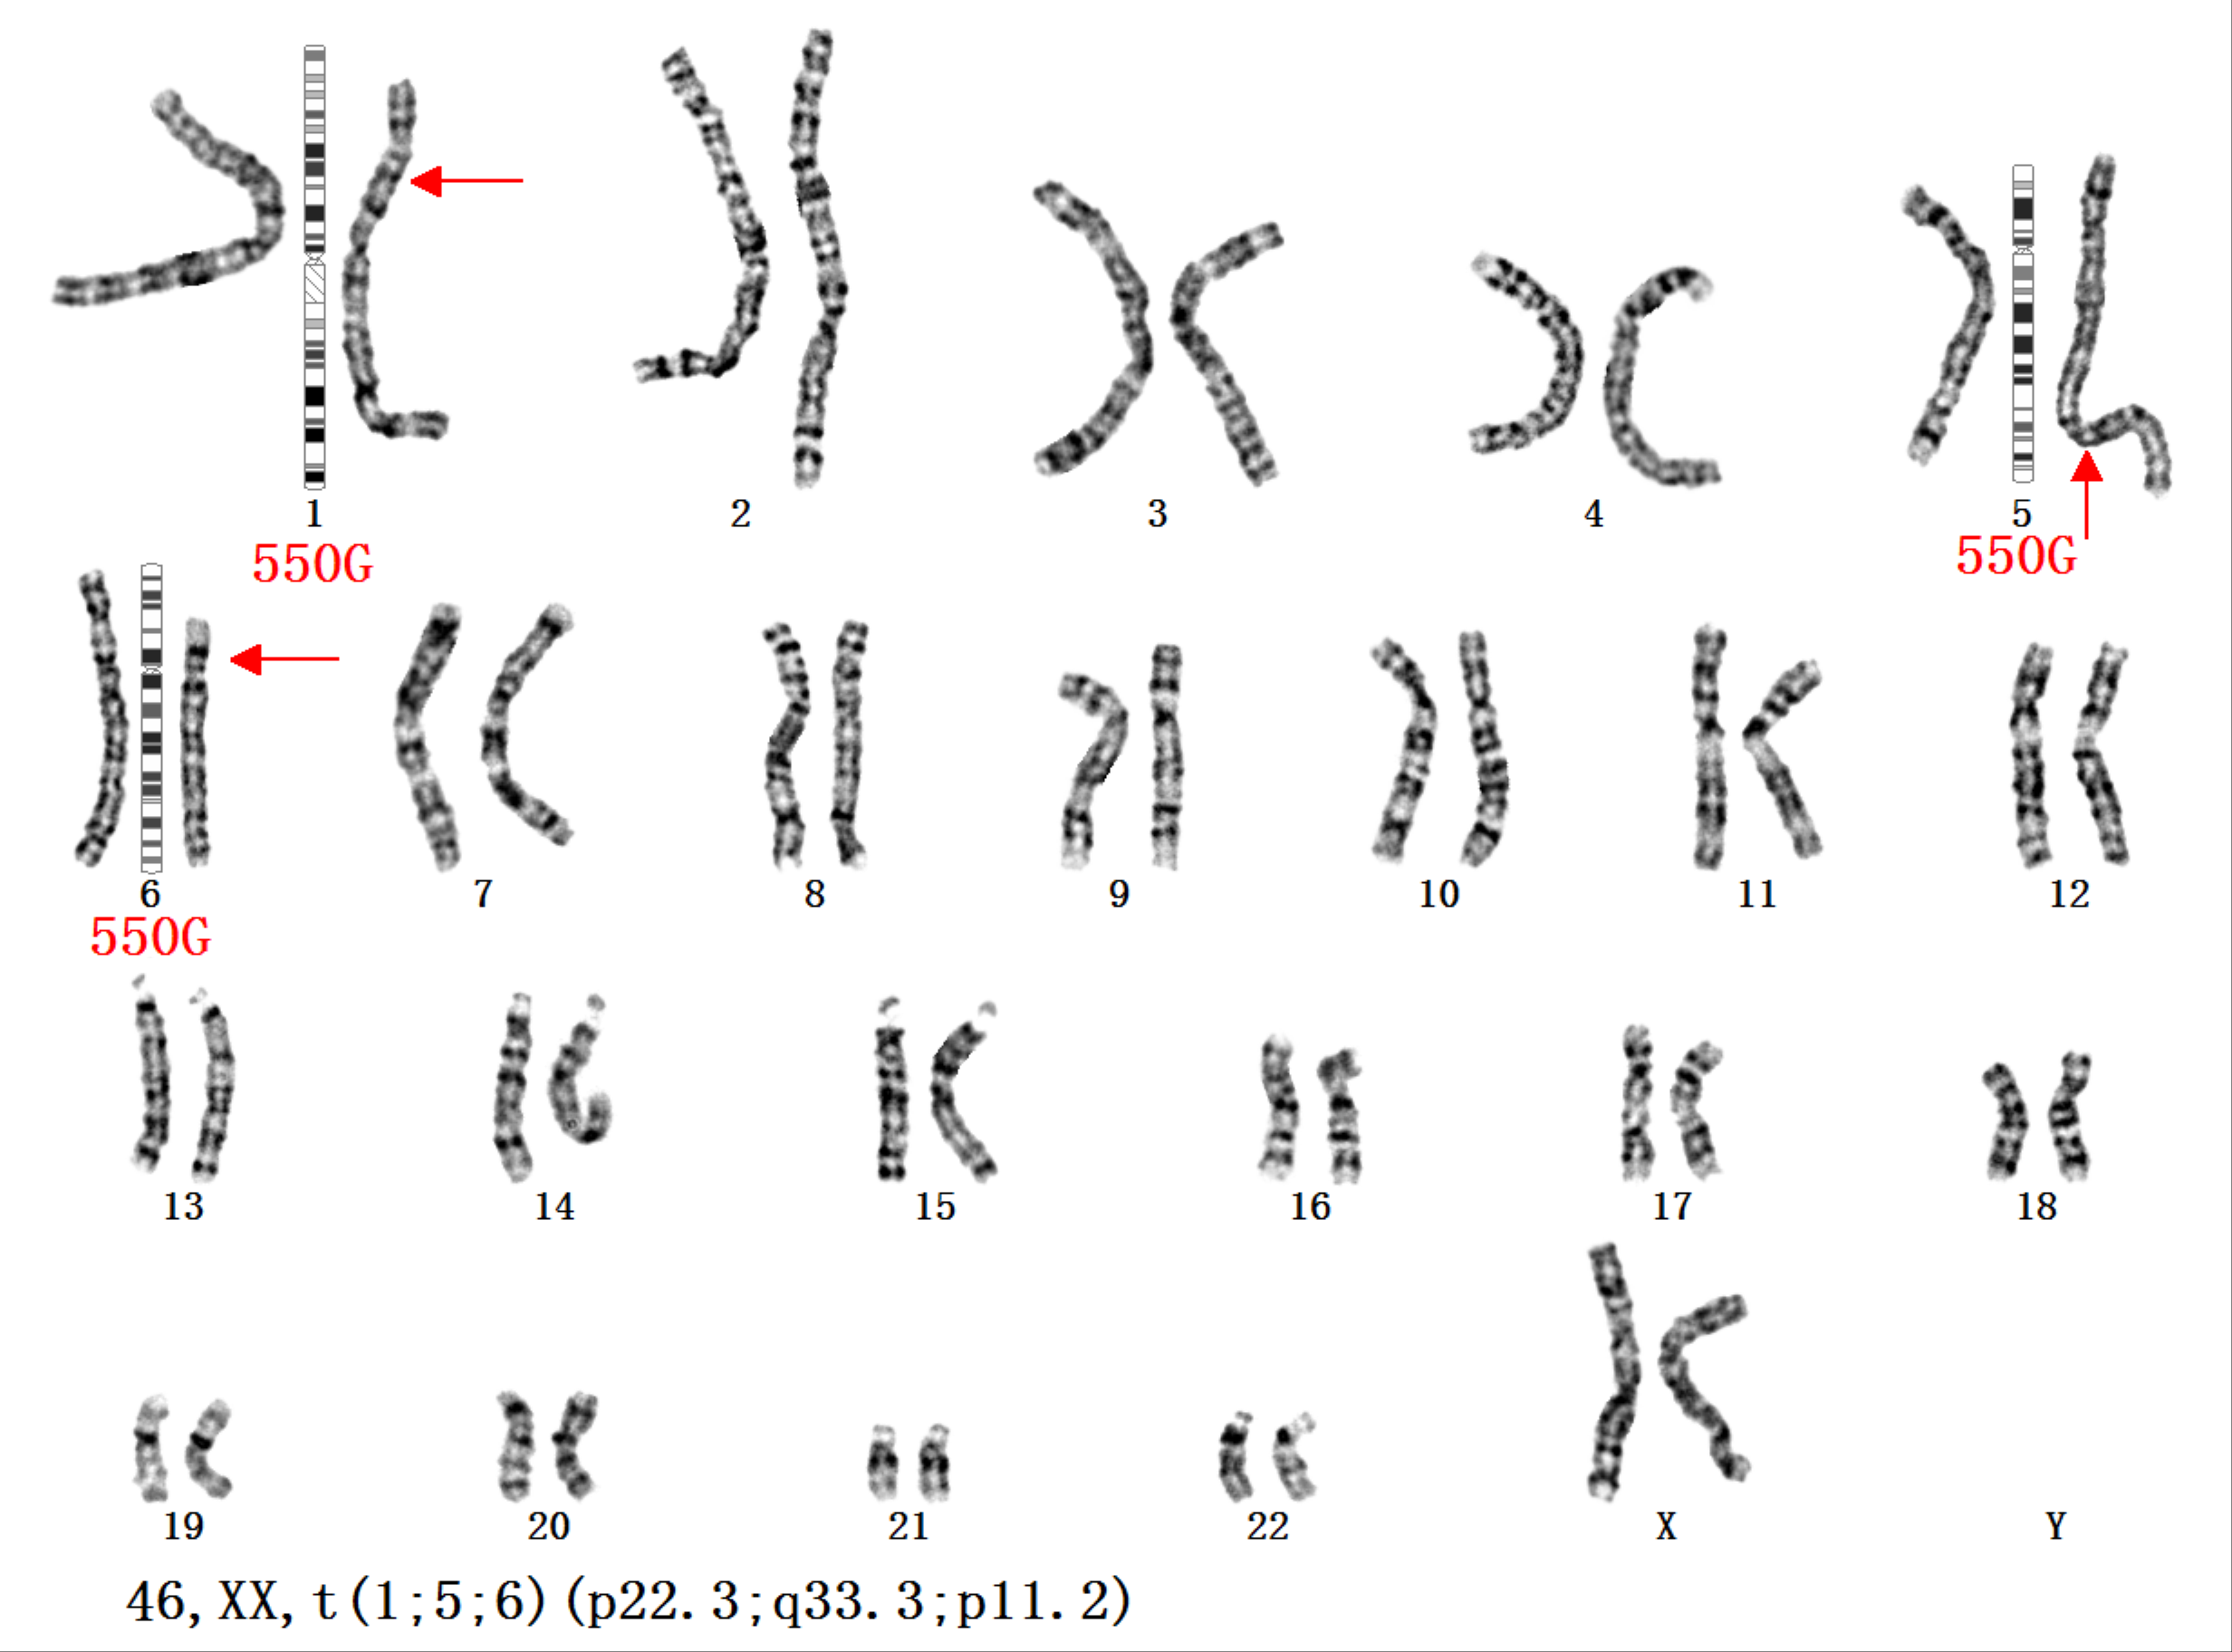 (1)相互易位:是指2条染色体同时发生断裂,断片交换位置后重接,形成2条